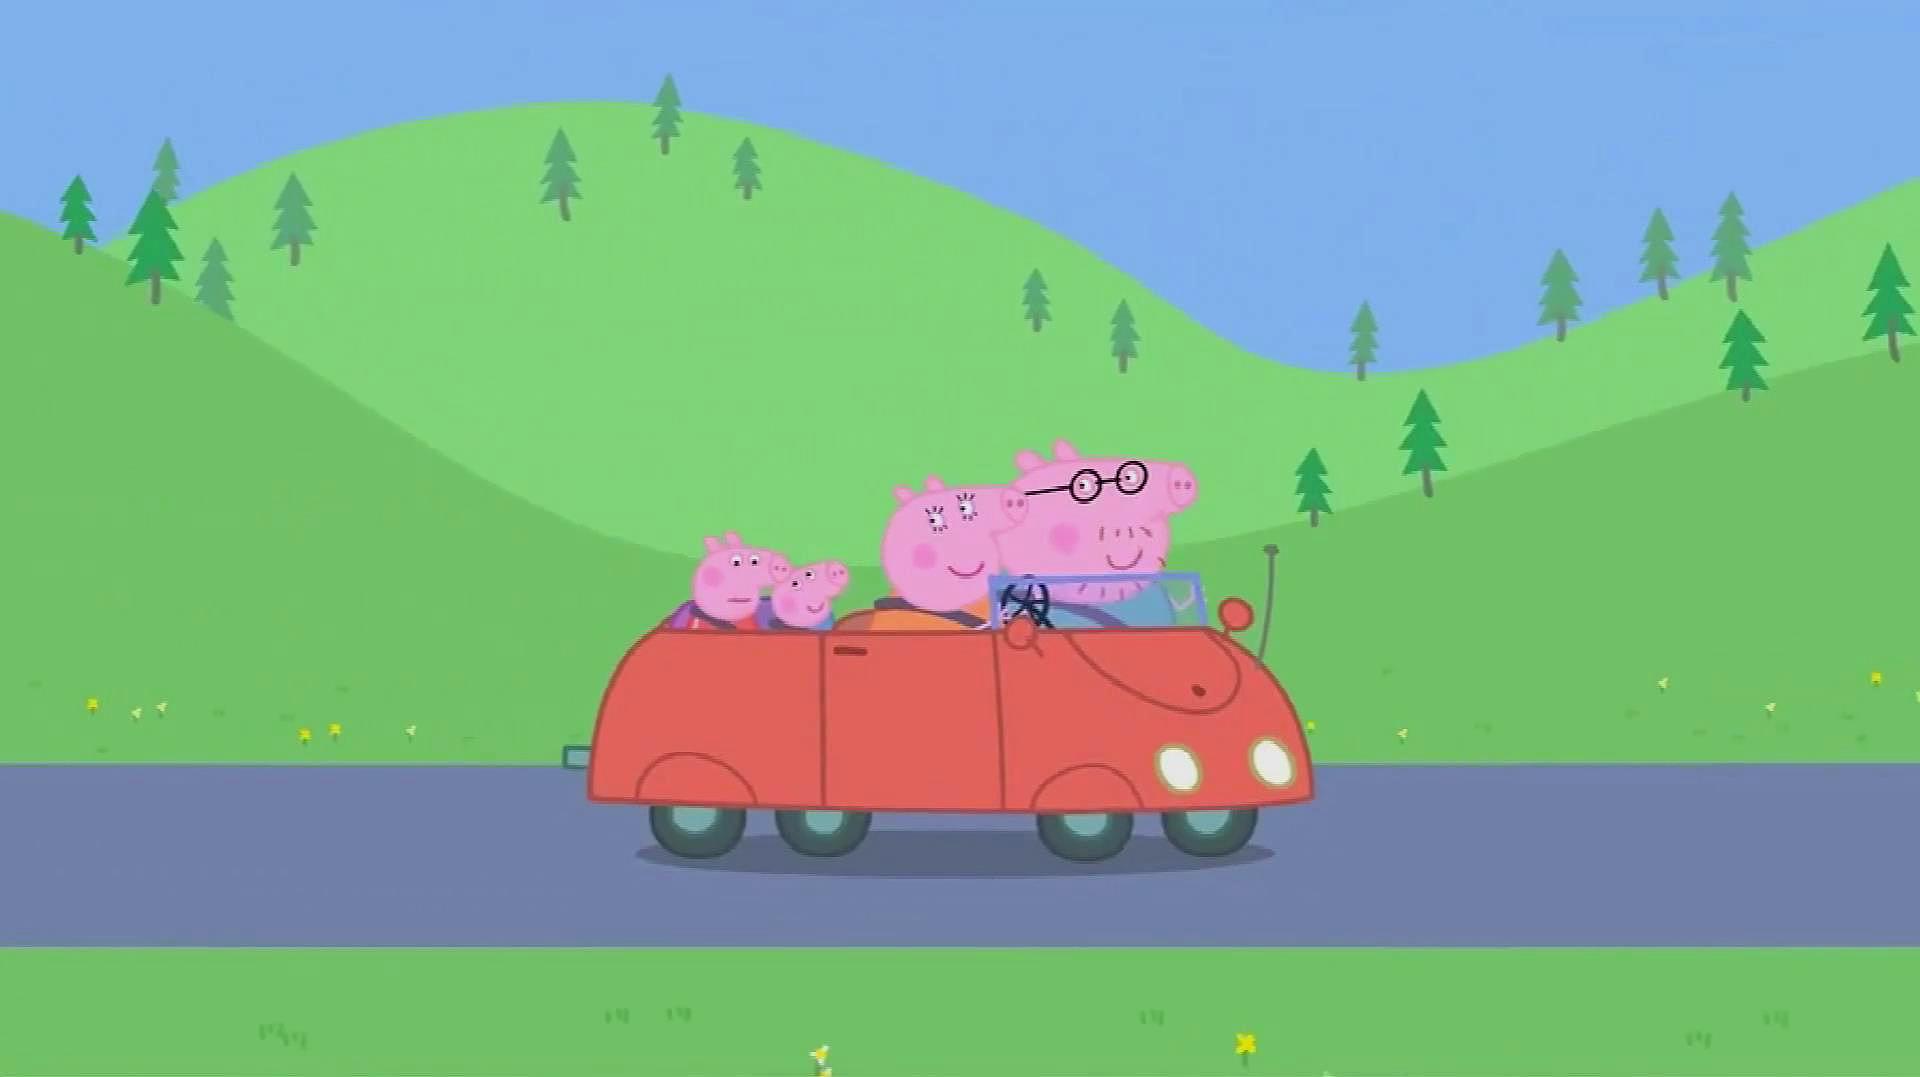 小猪佩奇简笔画:小猪佩奇一家开车去露营,途中他们玩什么游戏呢